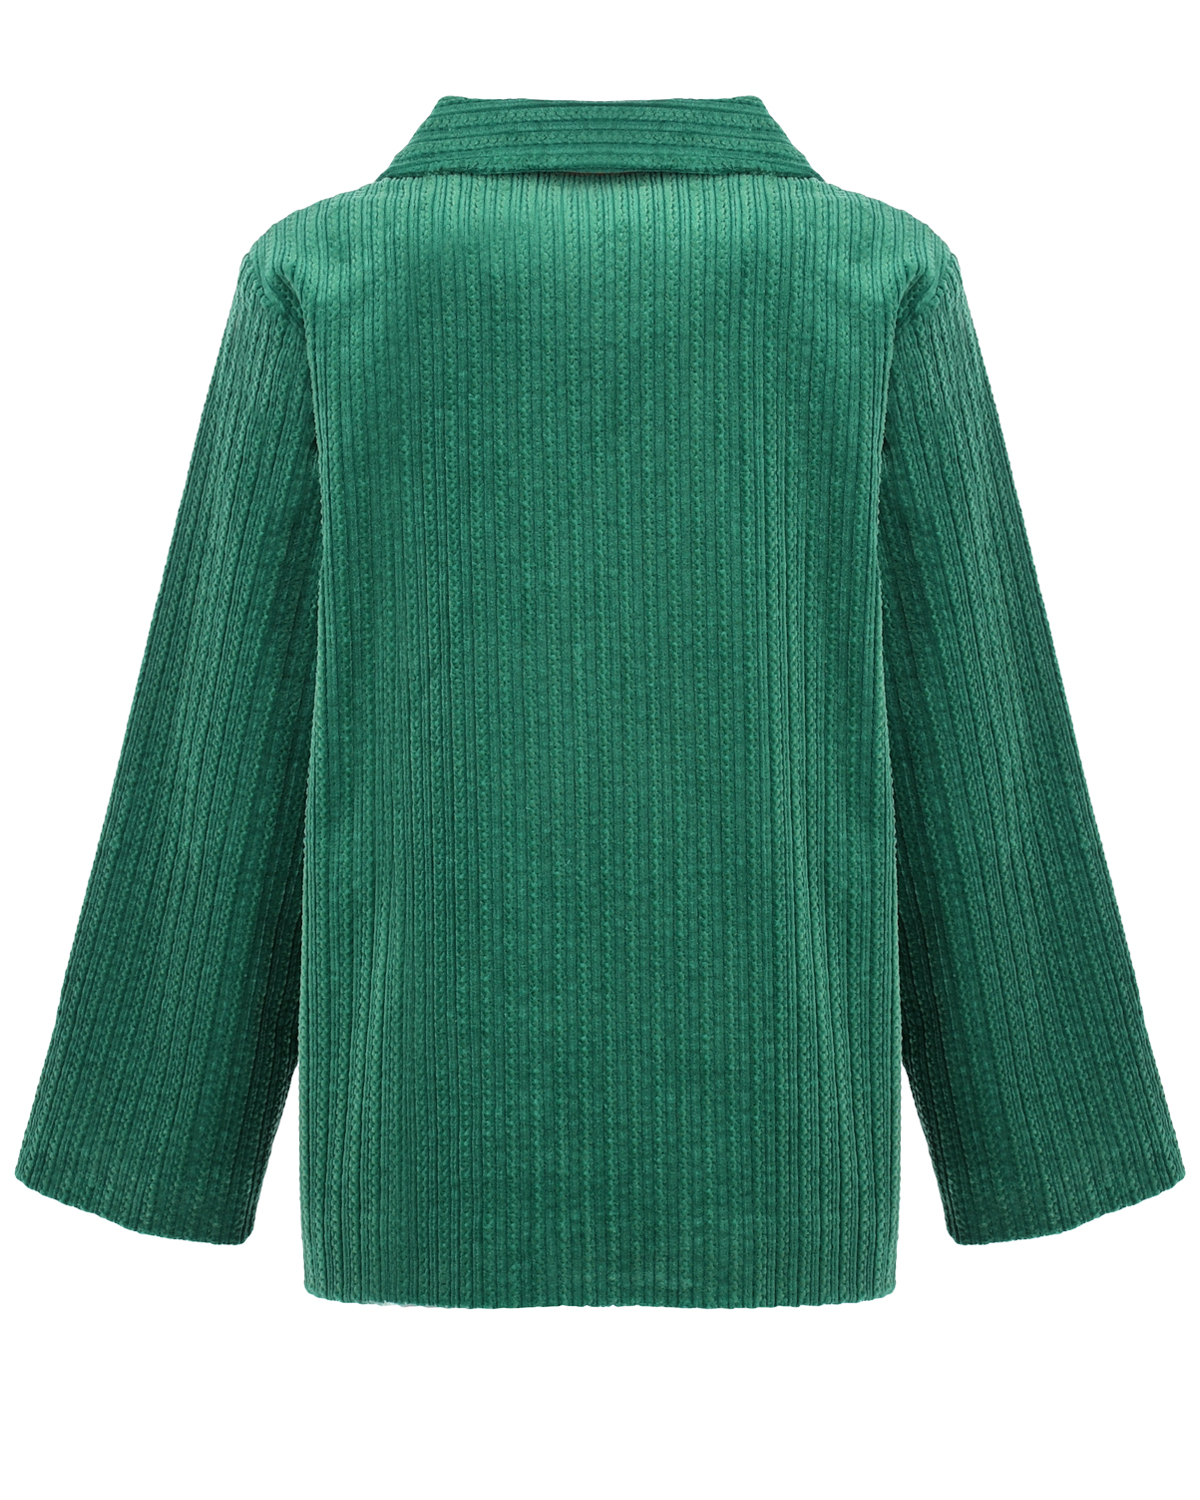 Зеленый пиджак с накладными карманами Mini Rodini детский, размер 104 - фото 2